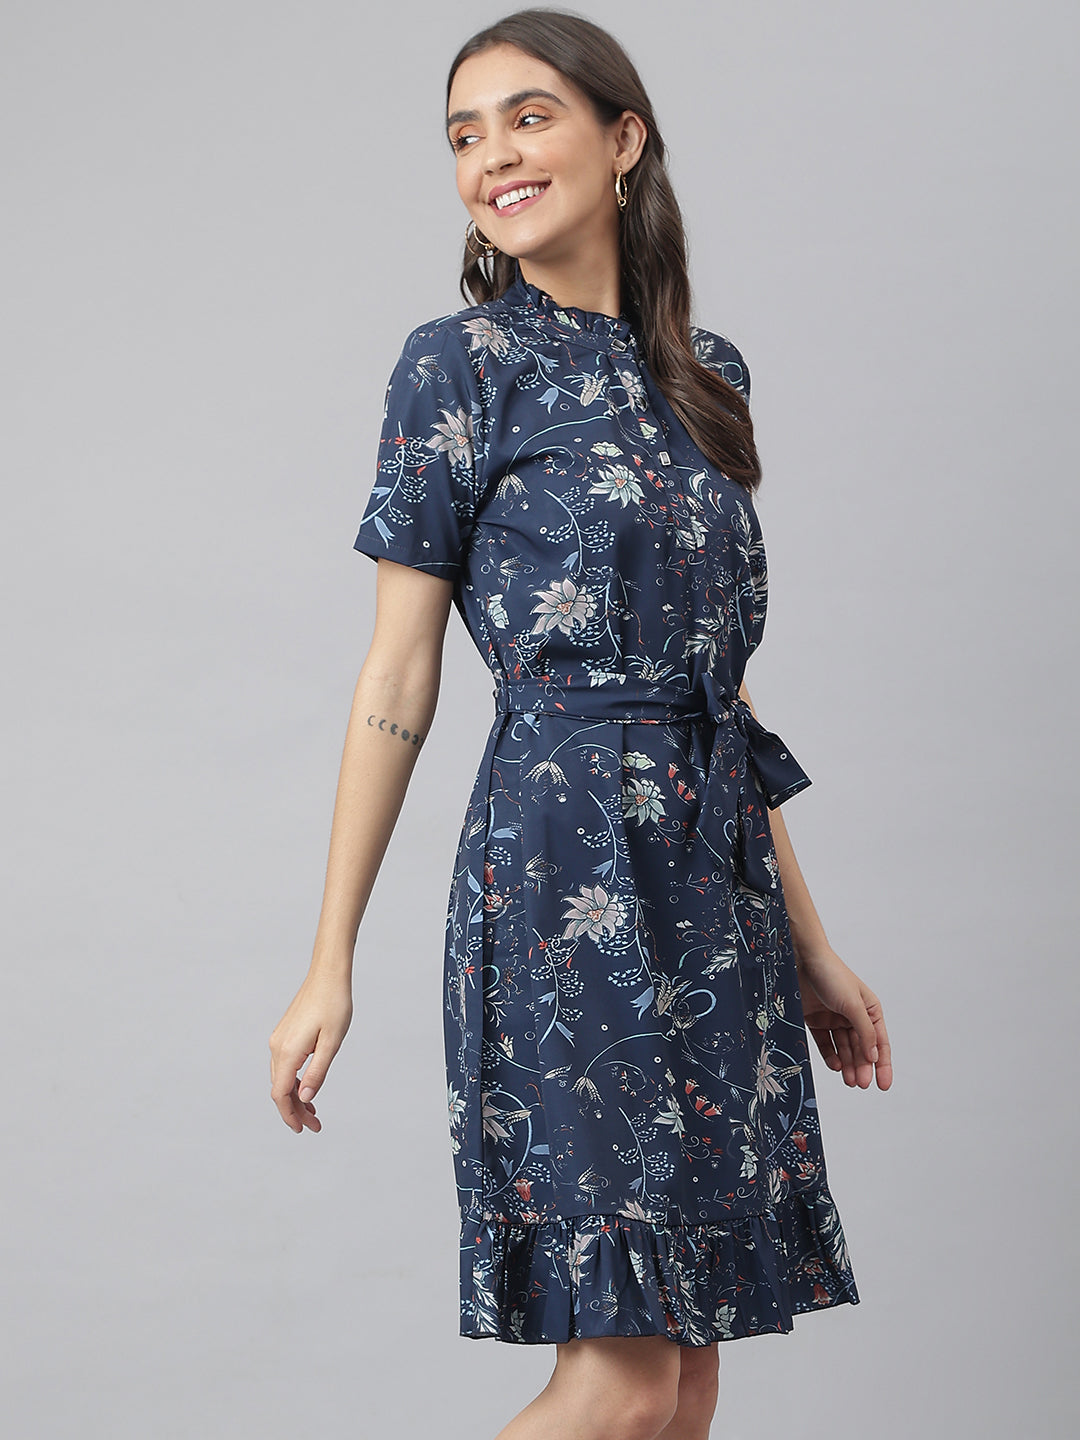 Navy Digital Printed Floral Dress